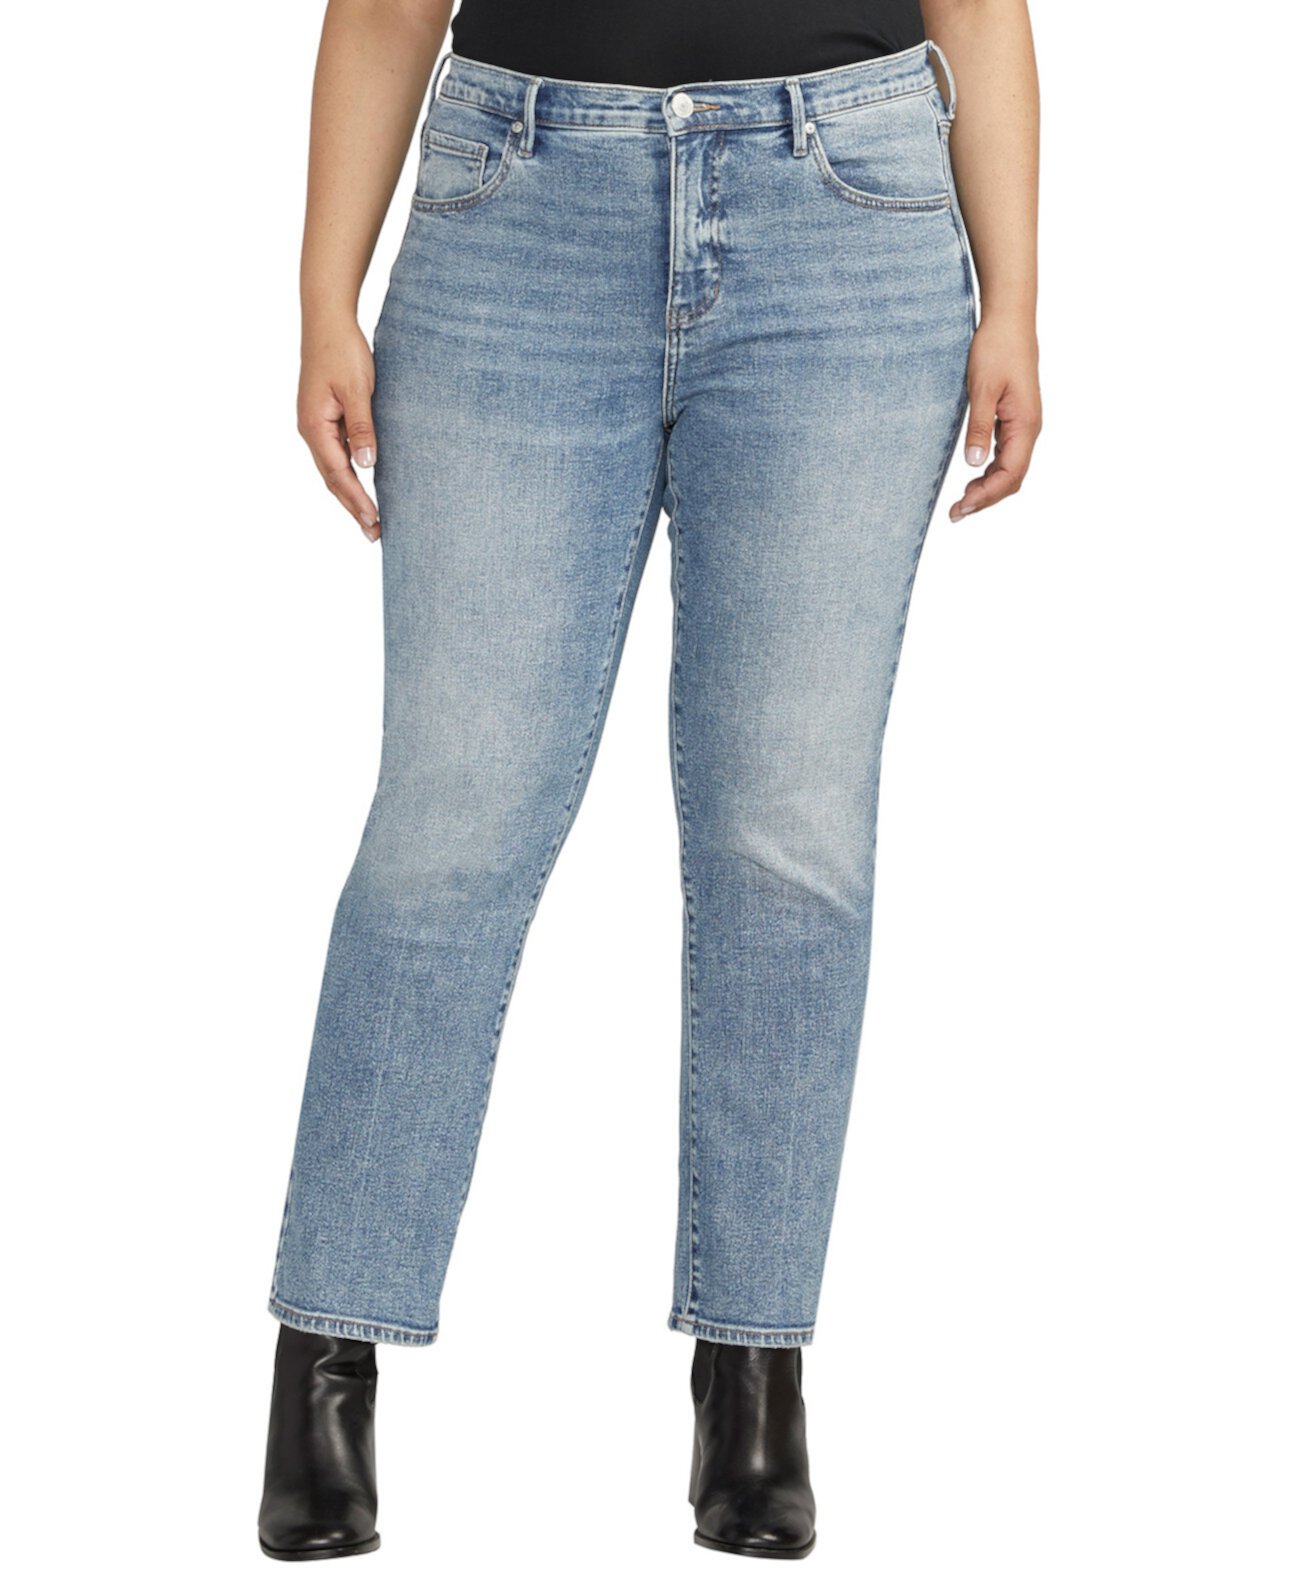 Узкие прямые джинсы Cassie со средней посадкой размера плюс JAG